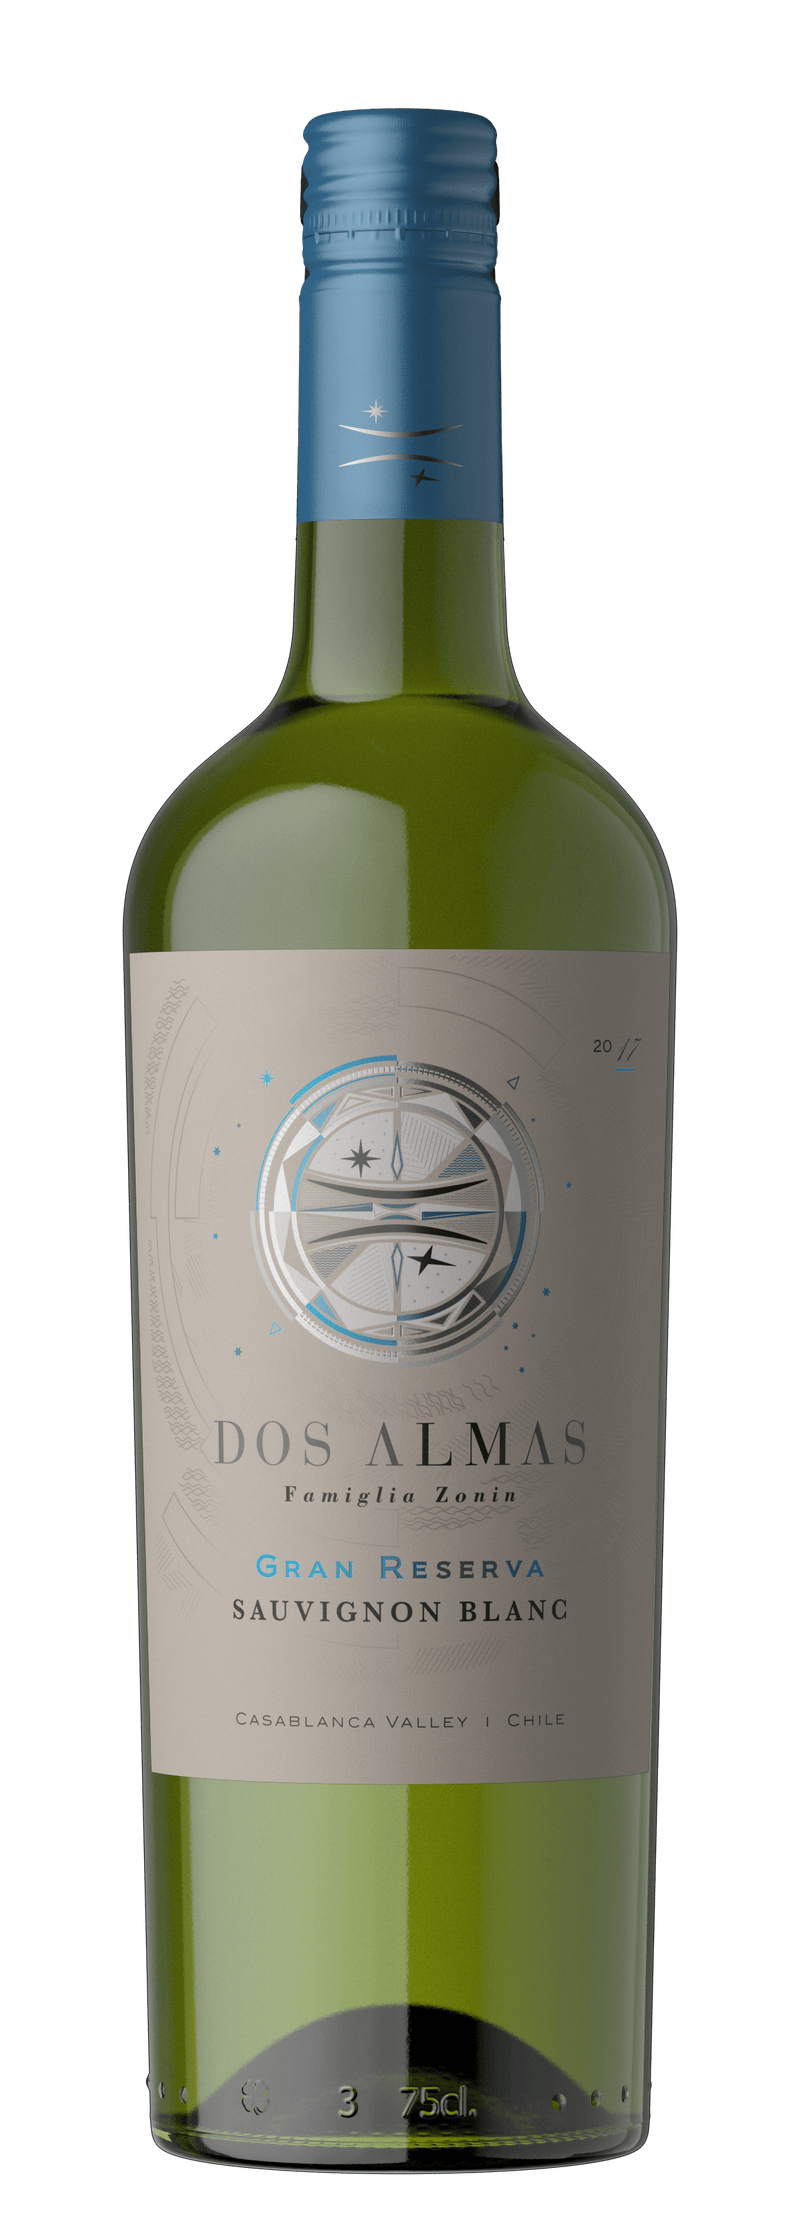 Dos Almas Grand Reserve Sauvignon Blanc